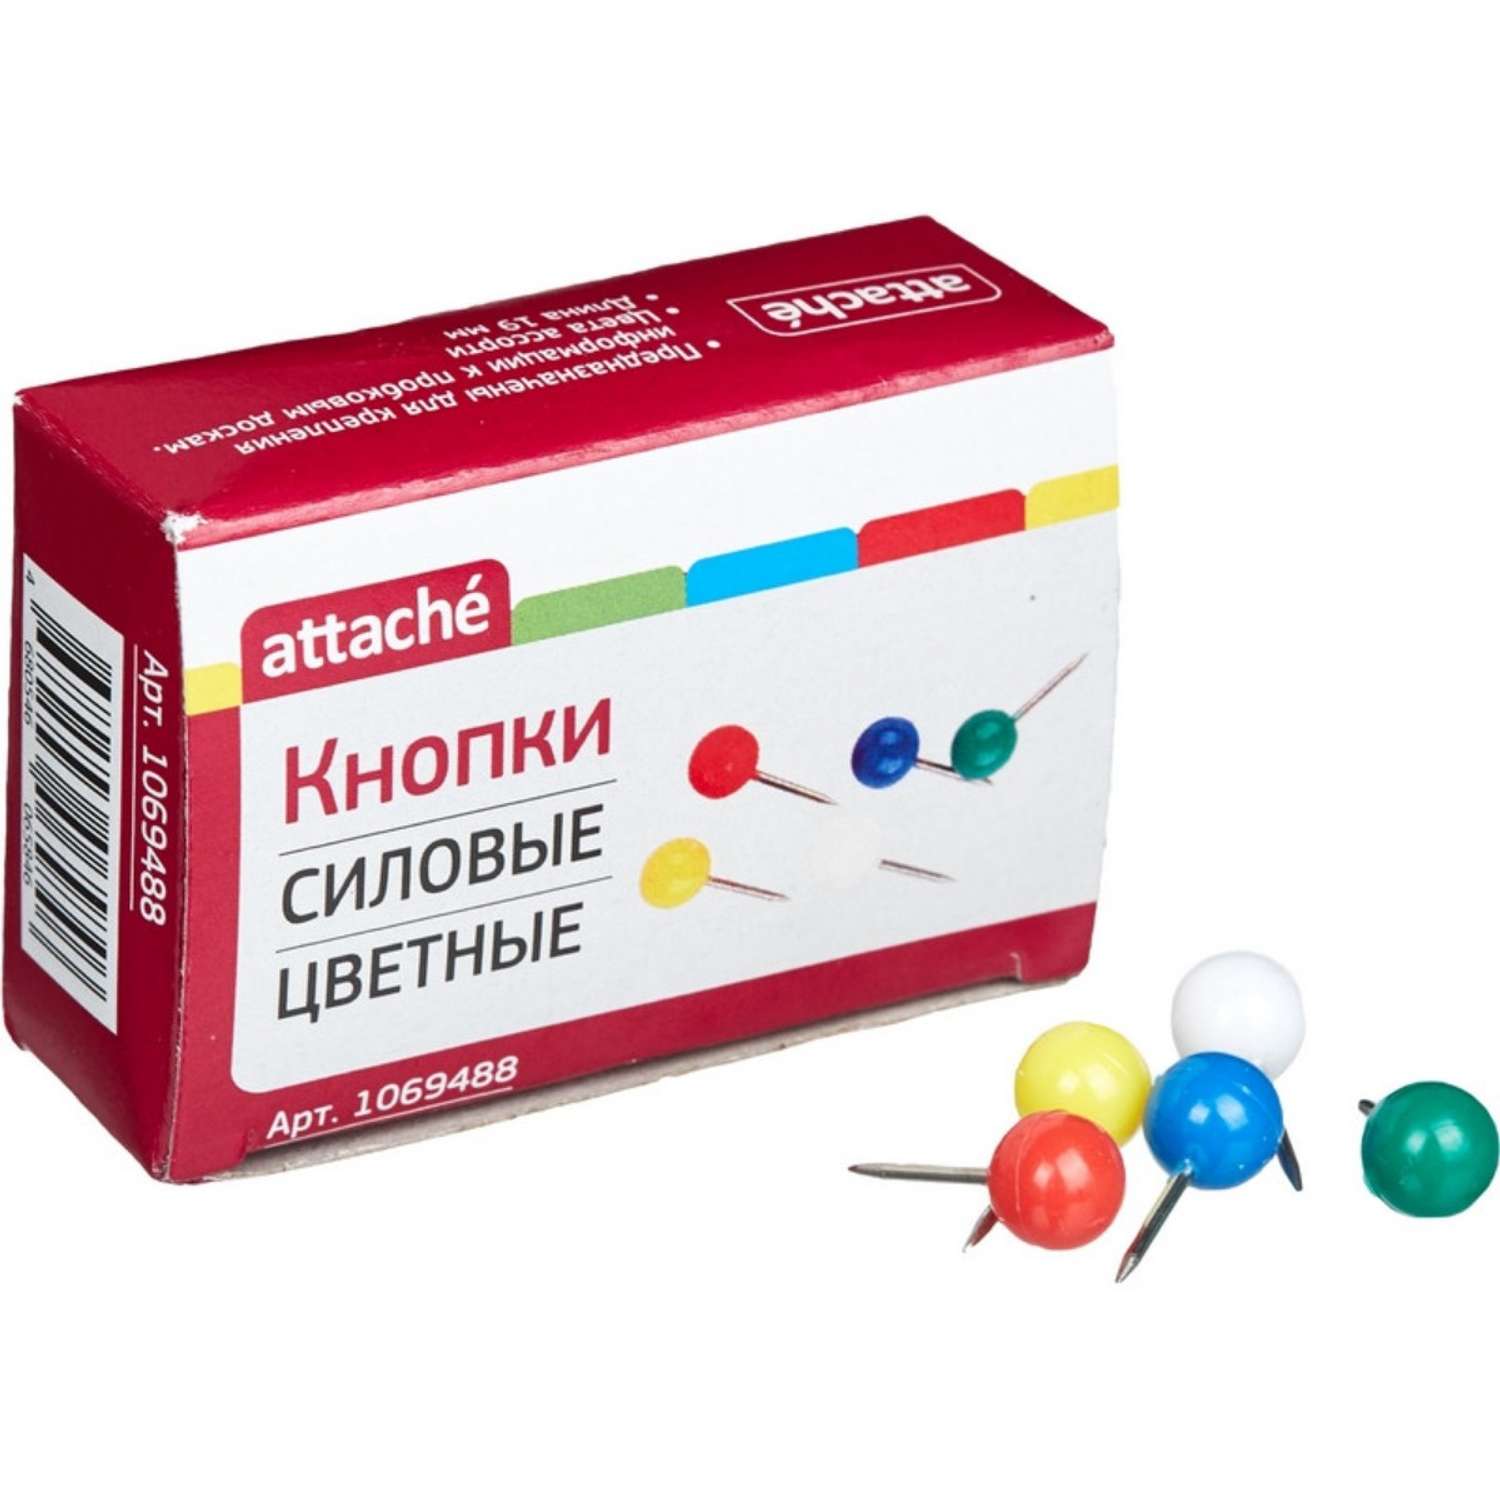 Булавки для пробковых досок Attache силовые (шарики) цветные 6 упаковок по 50 штук - фото 1